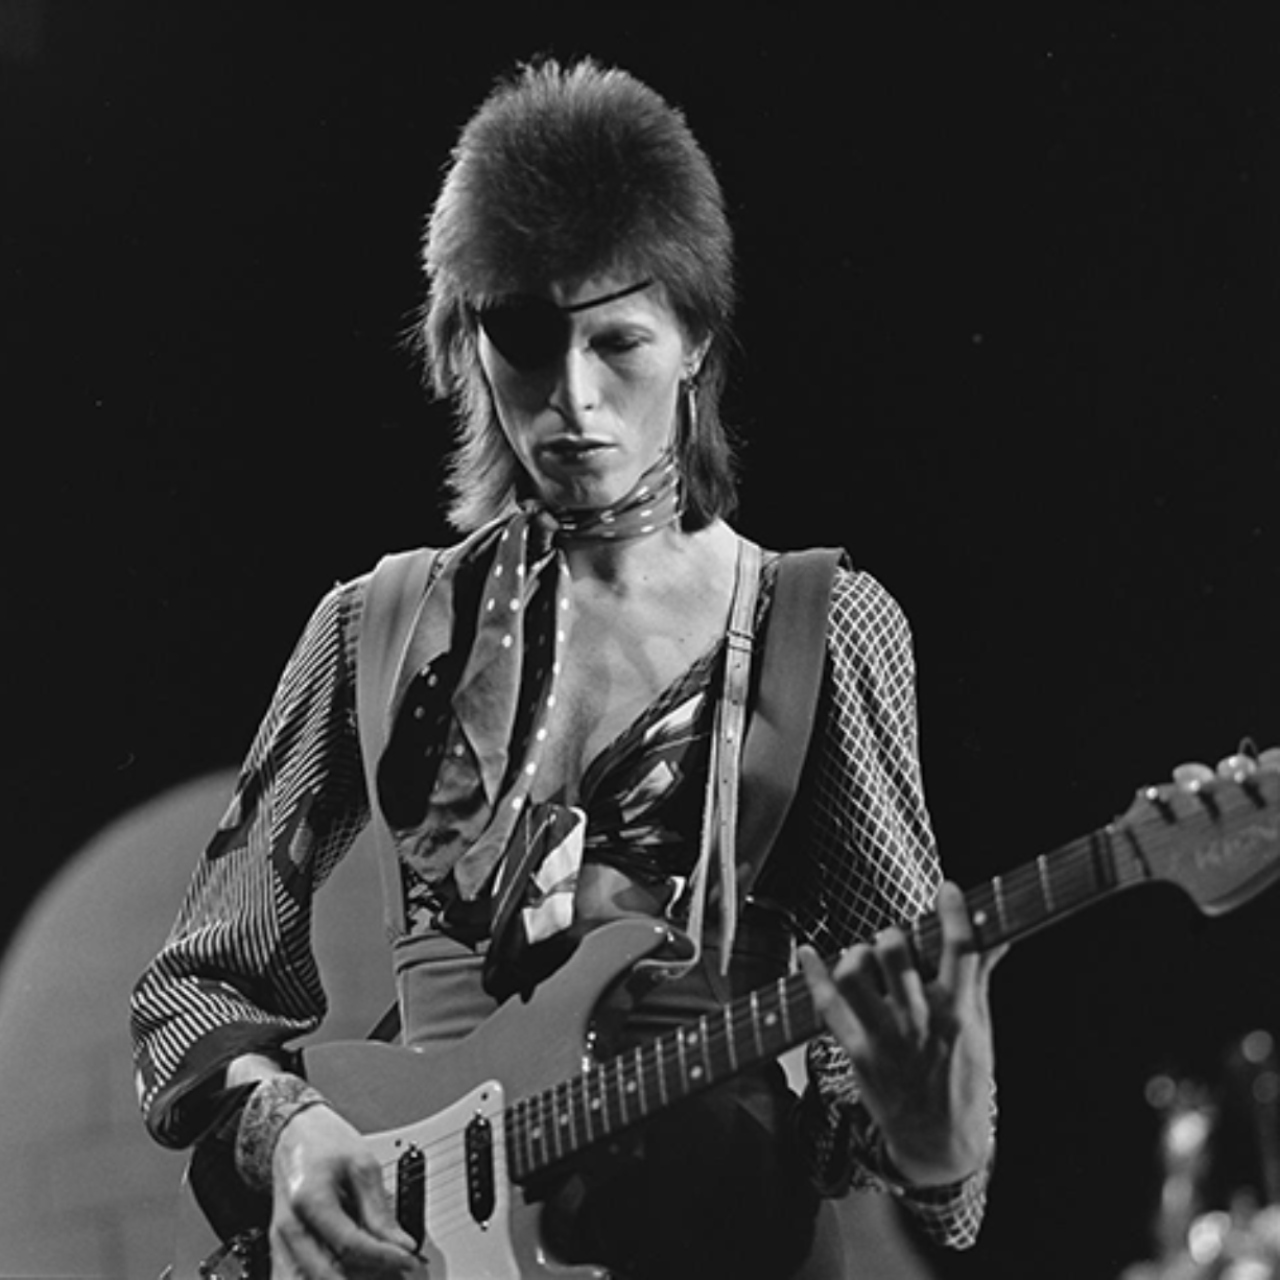 Durante um período de sua carreira, na década de 1970, Bowie se apresentava usando um tapa-olho